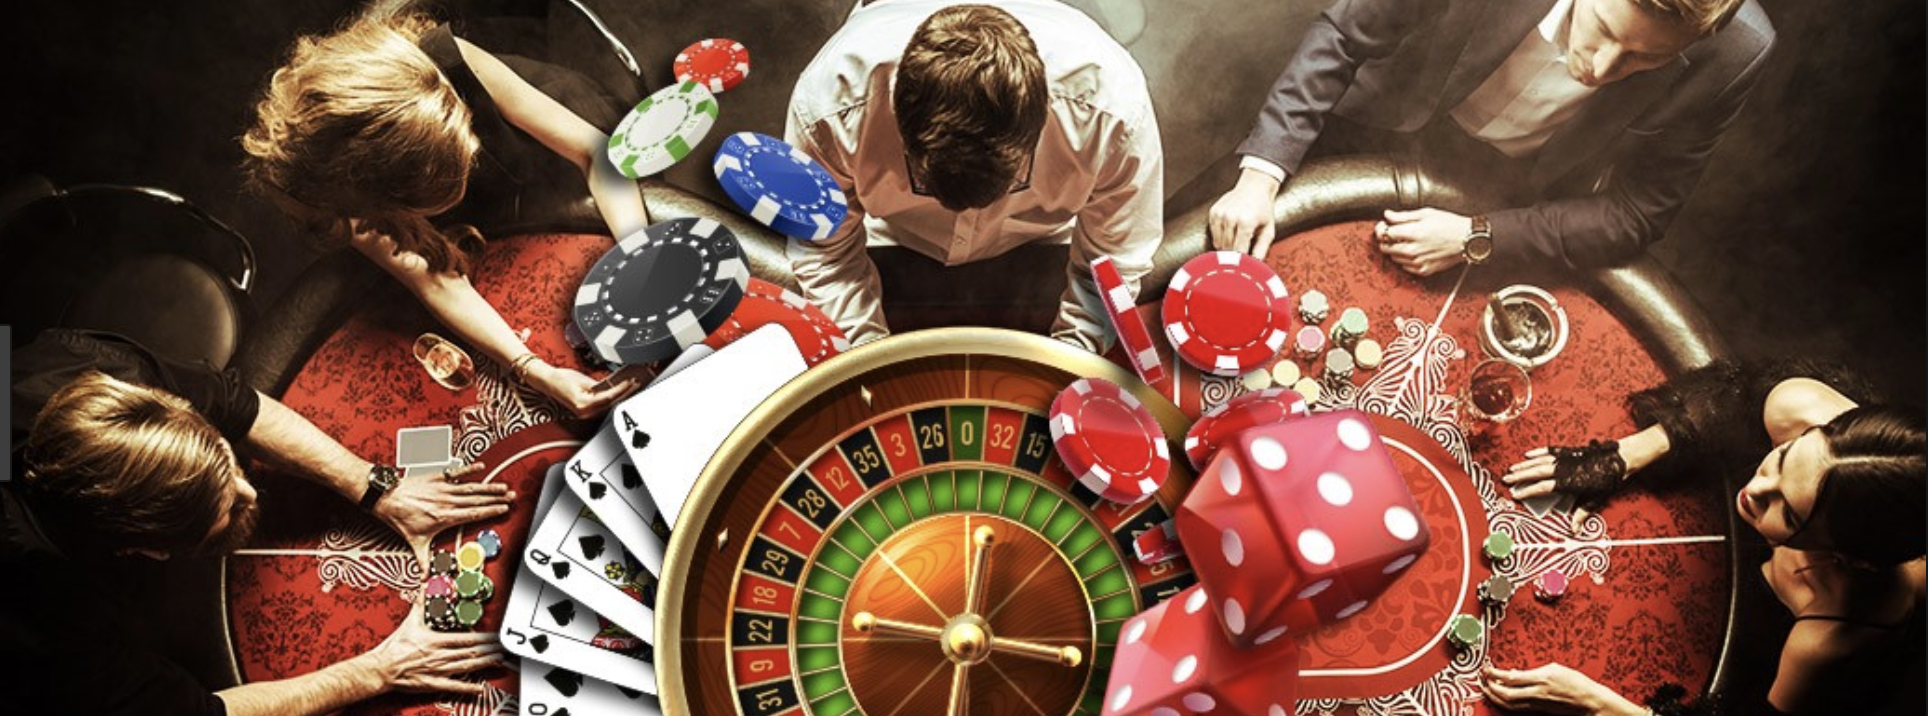 Зависимость от азартных игр. Казино коллаж. Игровая зависимость казино. Пристрастие к азартным играм.